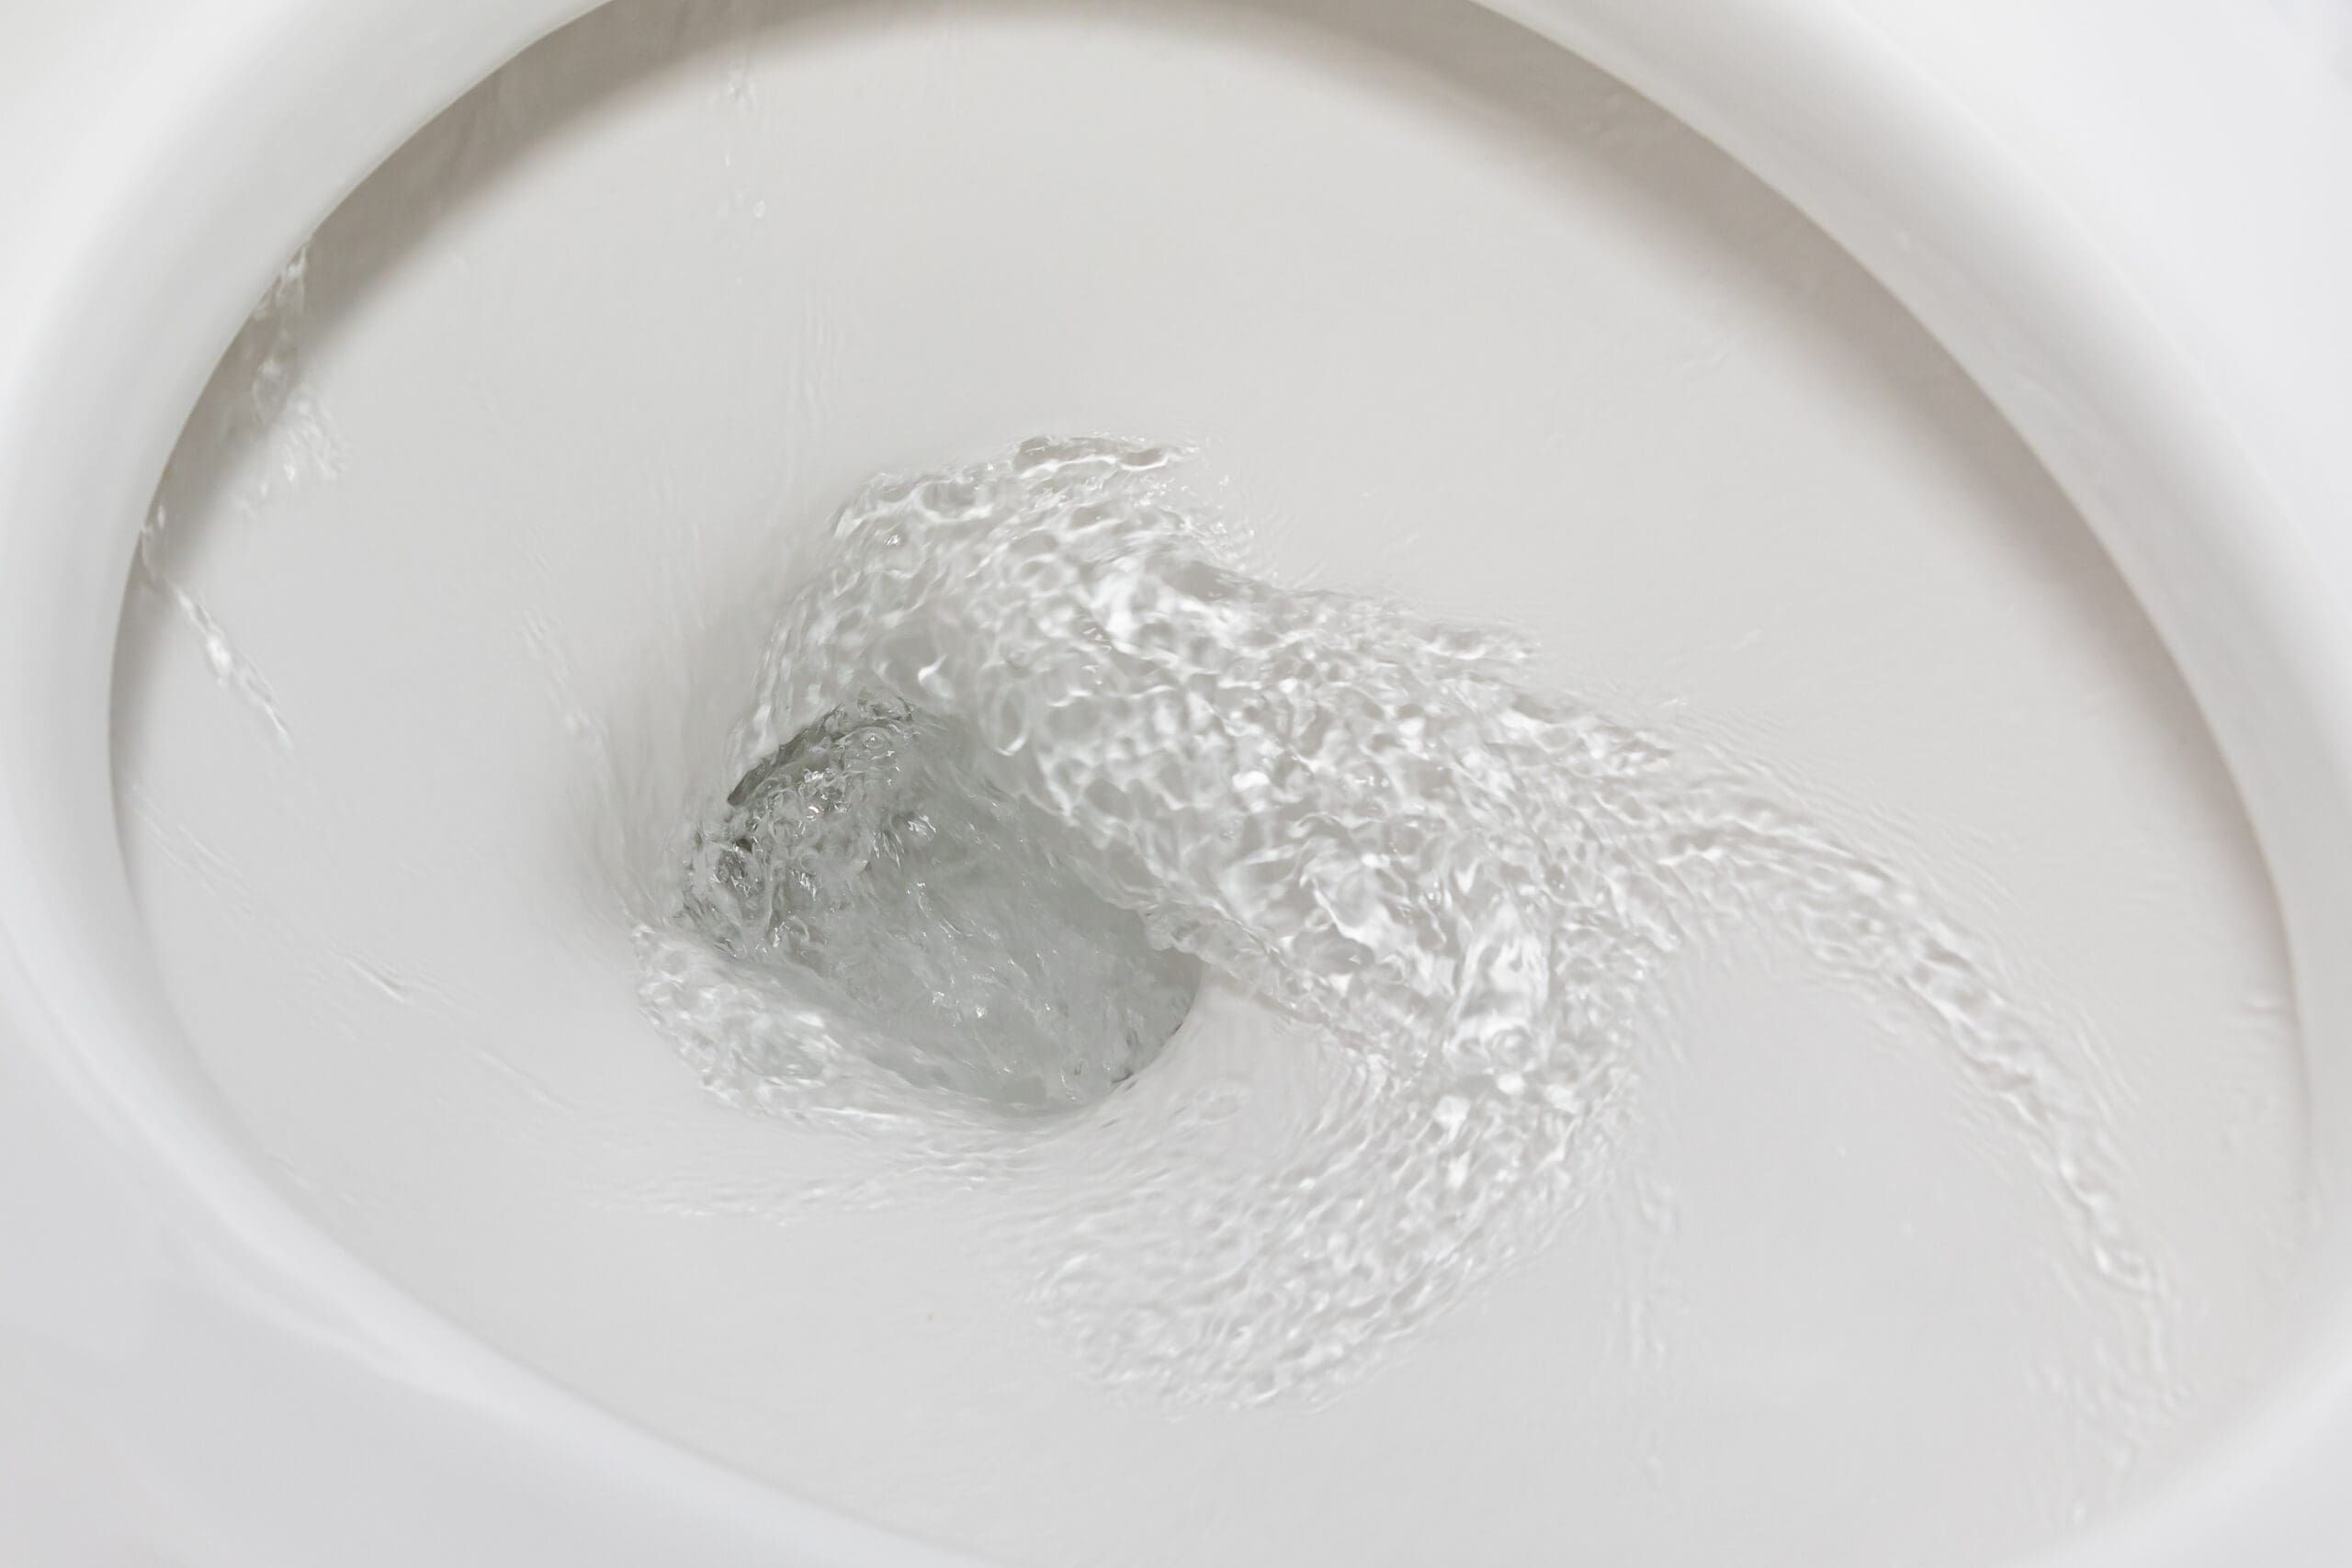 Water in Toilet Bowl